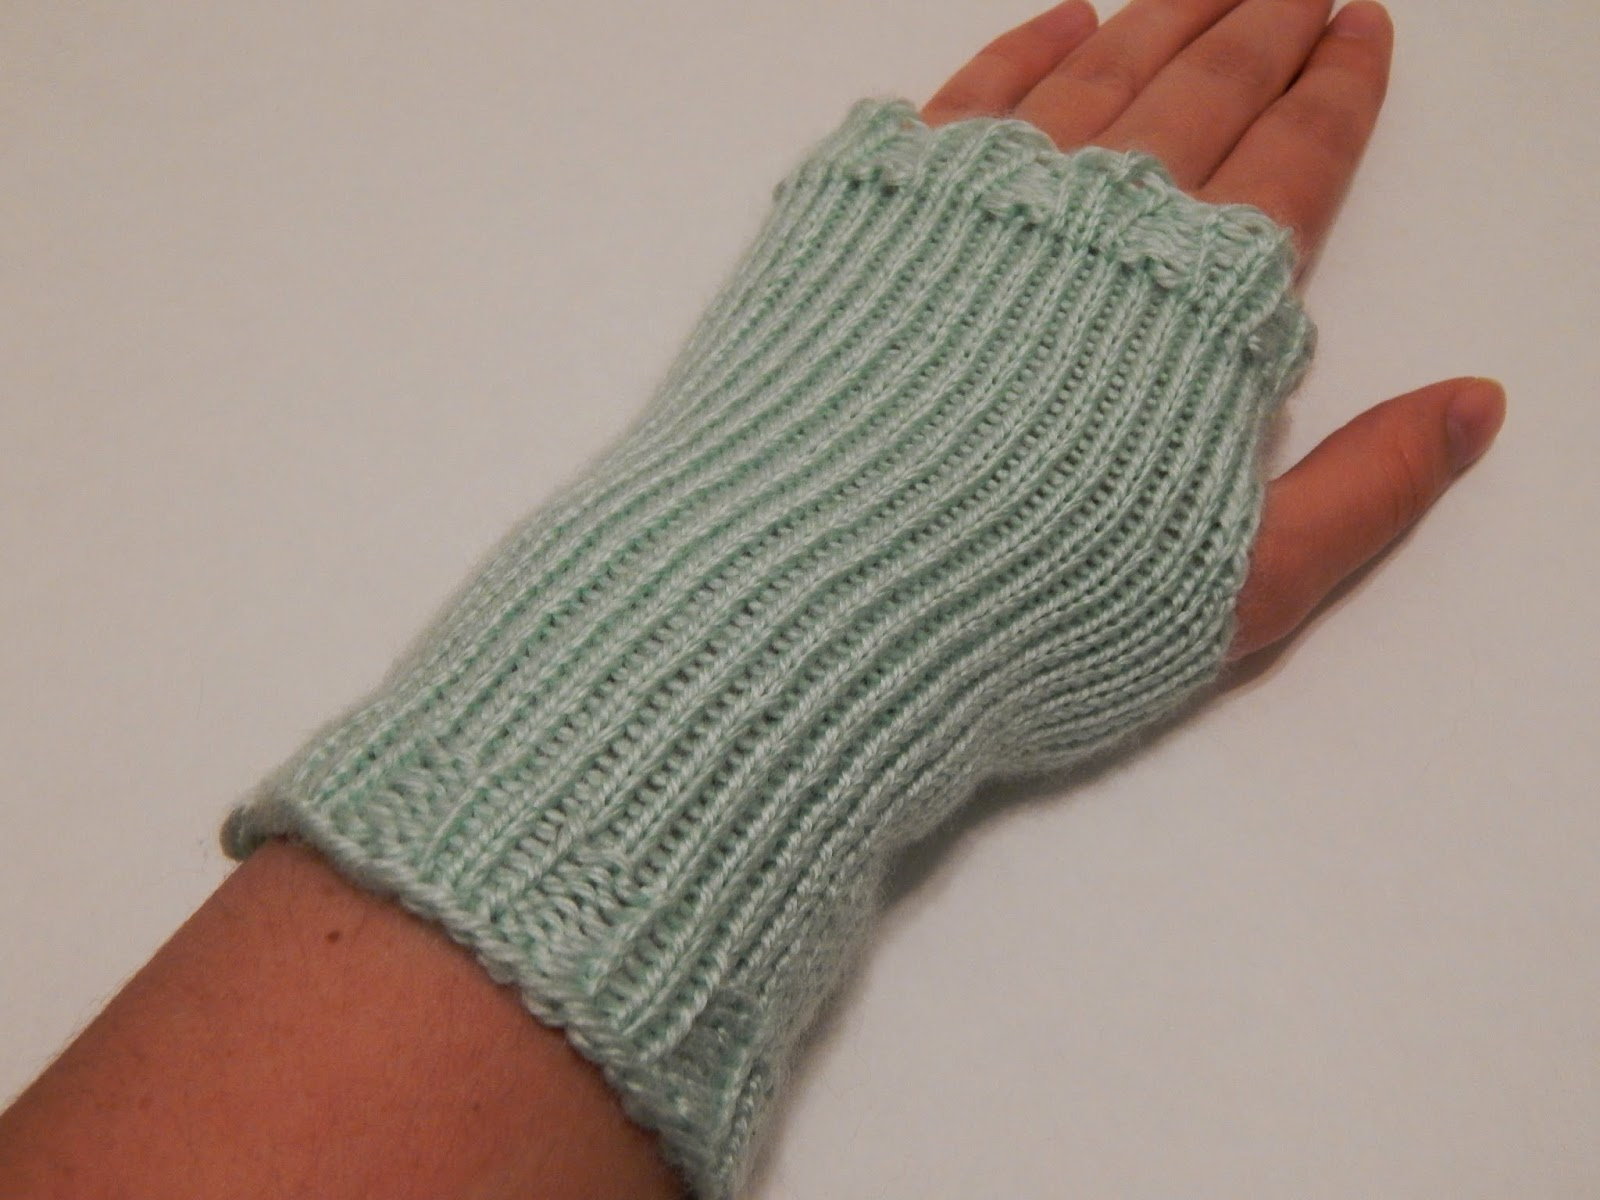 Mens Fingerless Gloves Knit Pattern 48 Knitting Patterns For Fingerless Gloves Guide Patterns